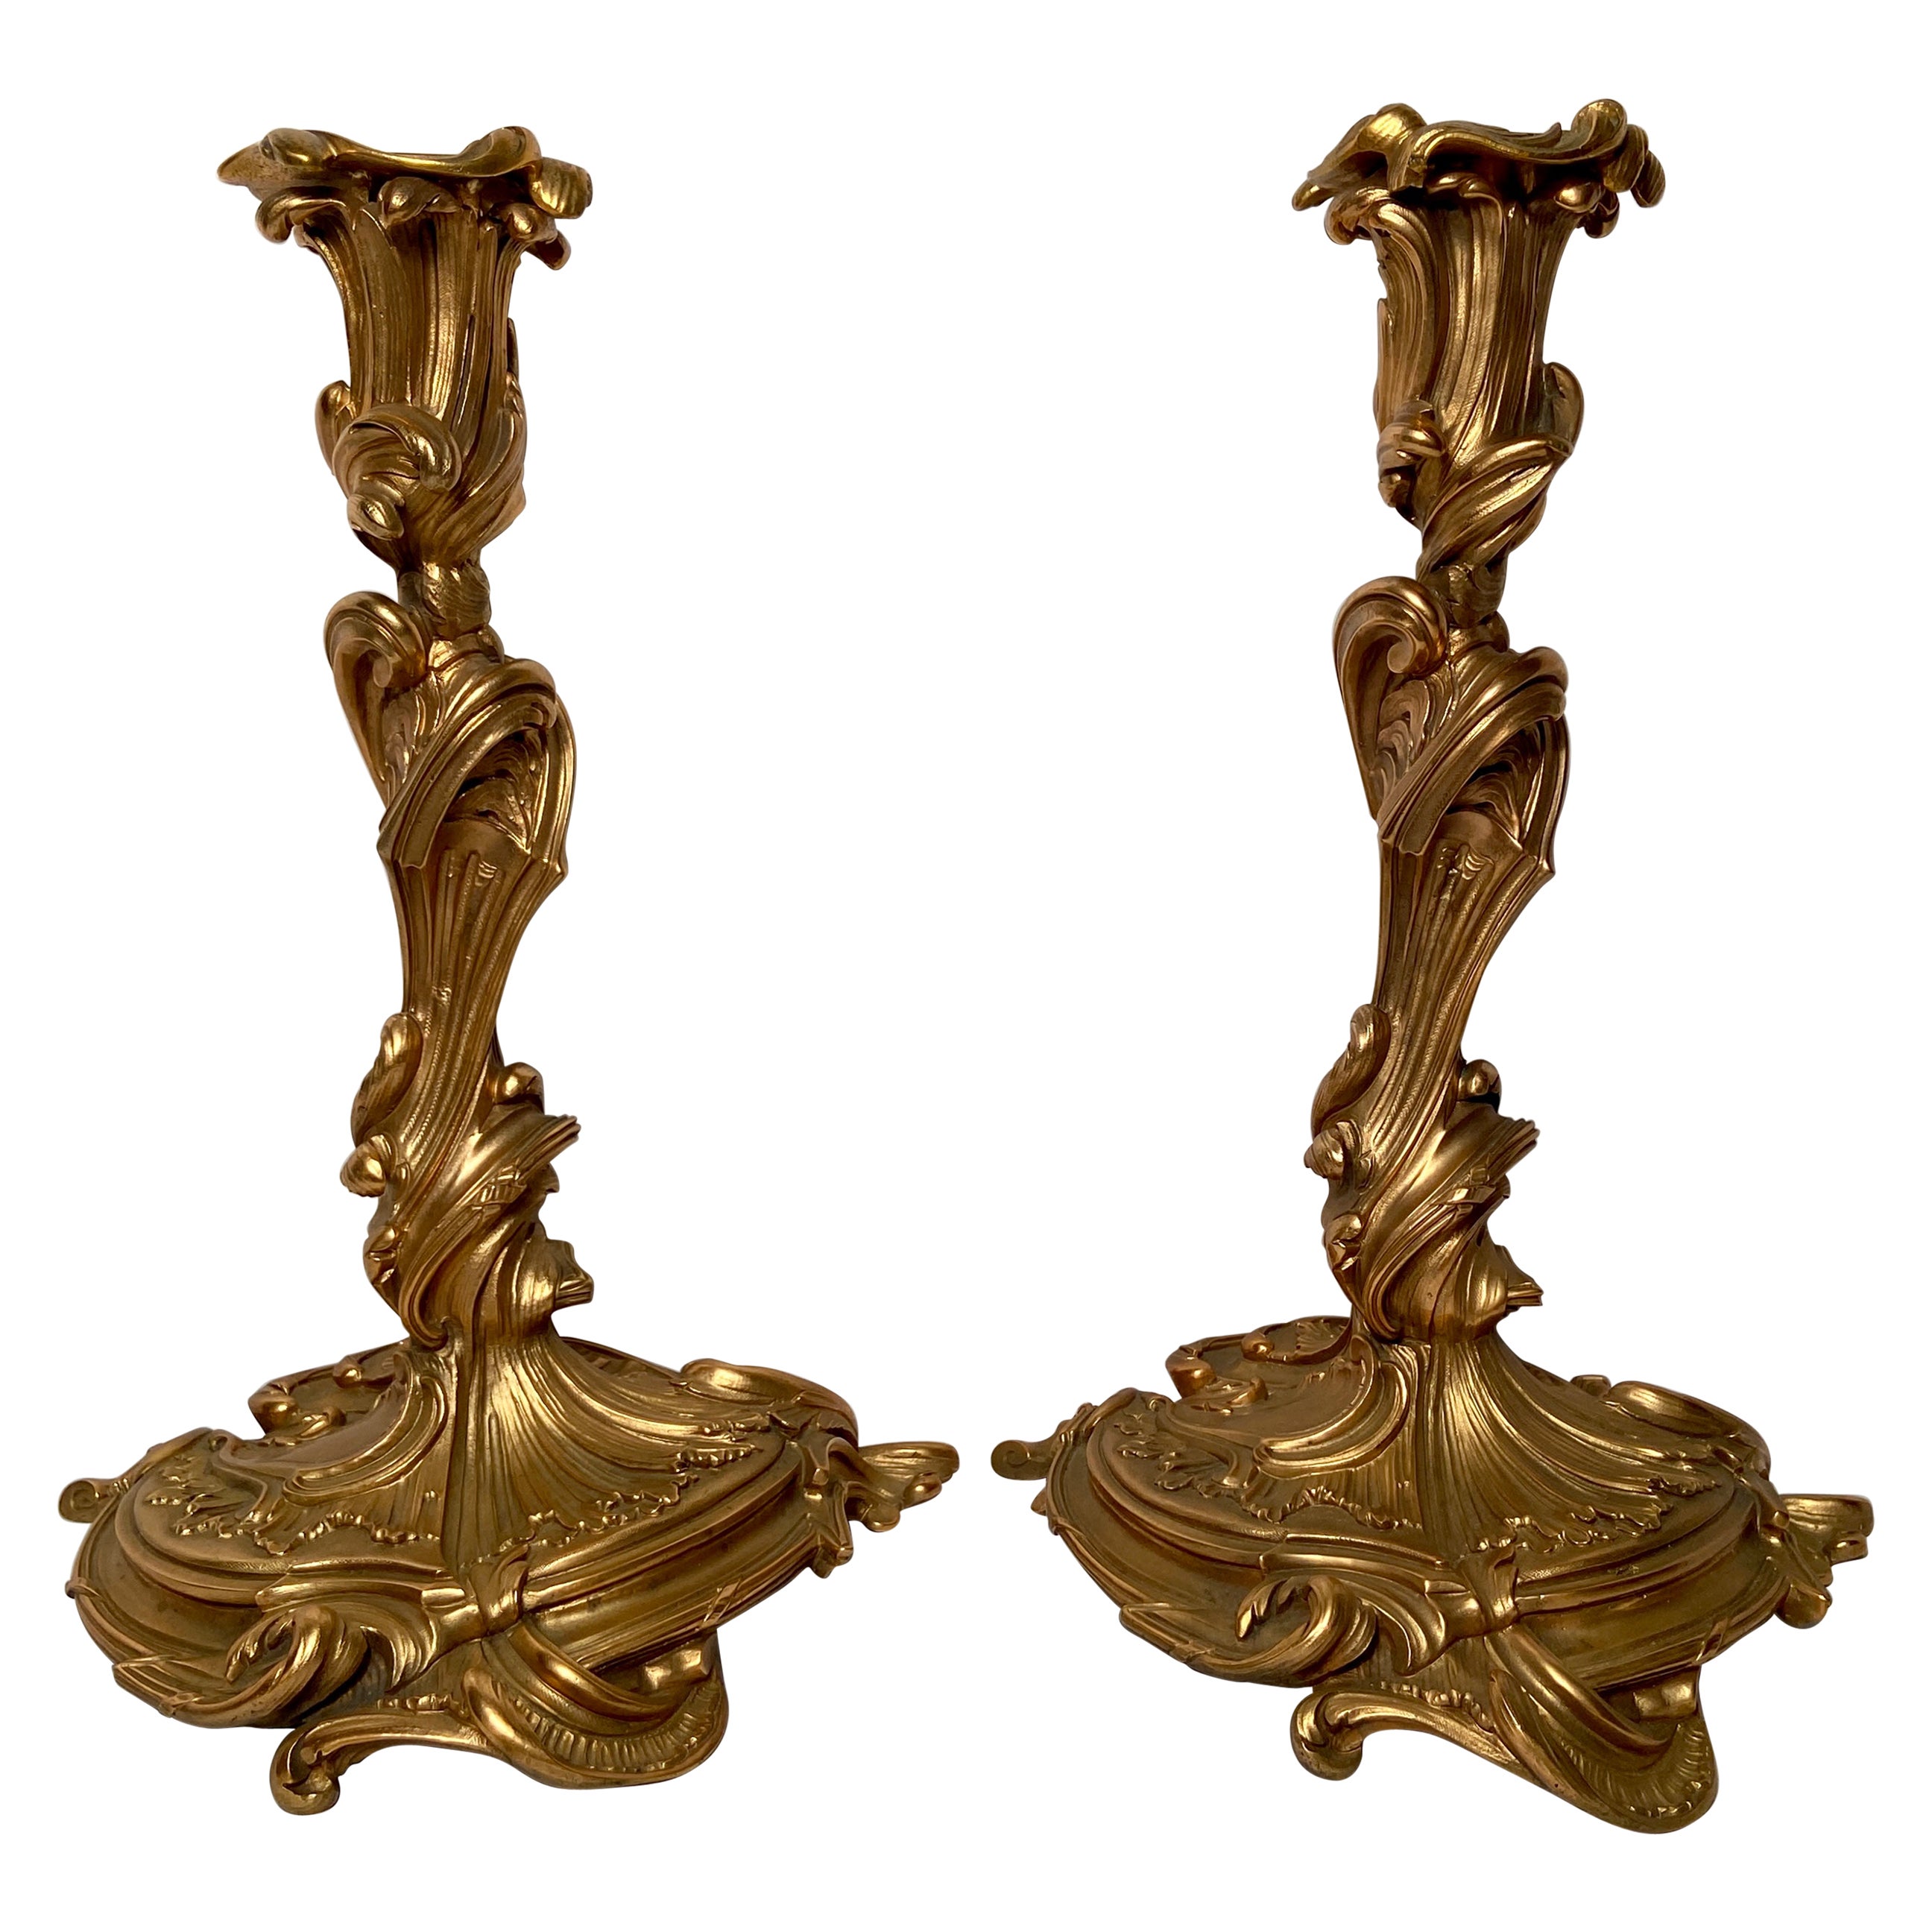 Paire de bougeoirs français anciens en bronze doré, vers 1870-1880